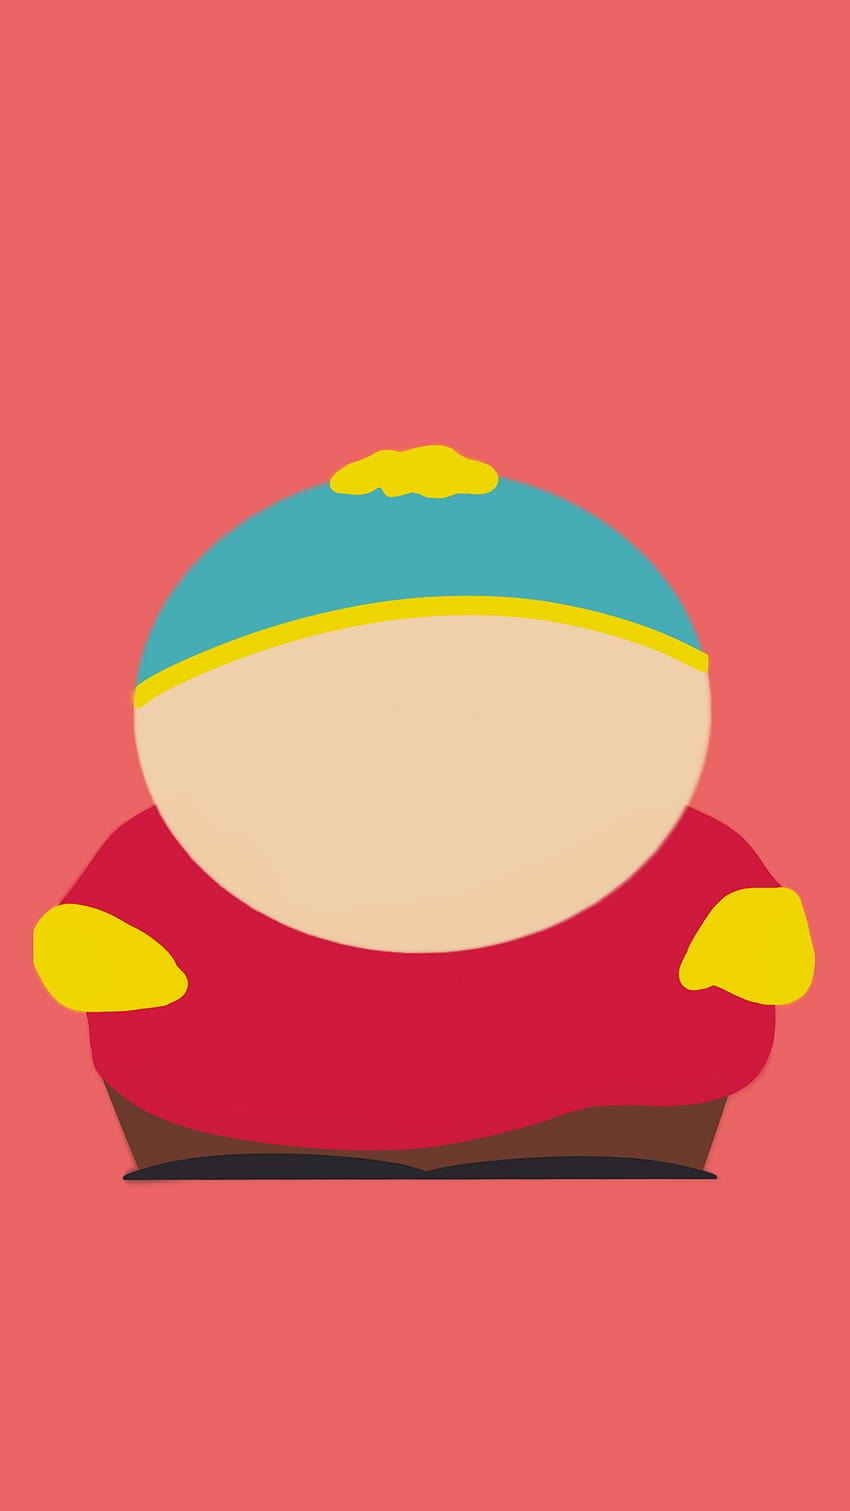 Cartman on Dog, eric cartman iphone wallpaper ponsel HD